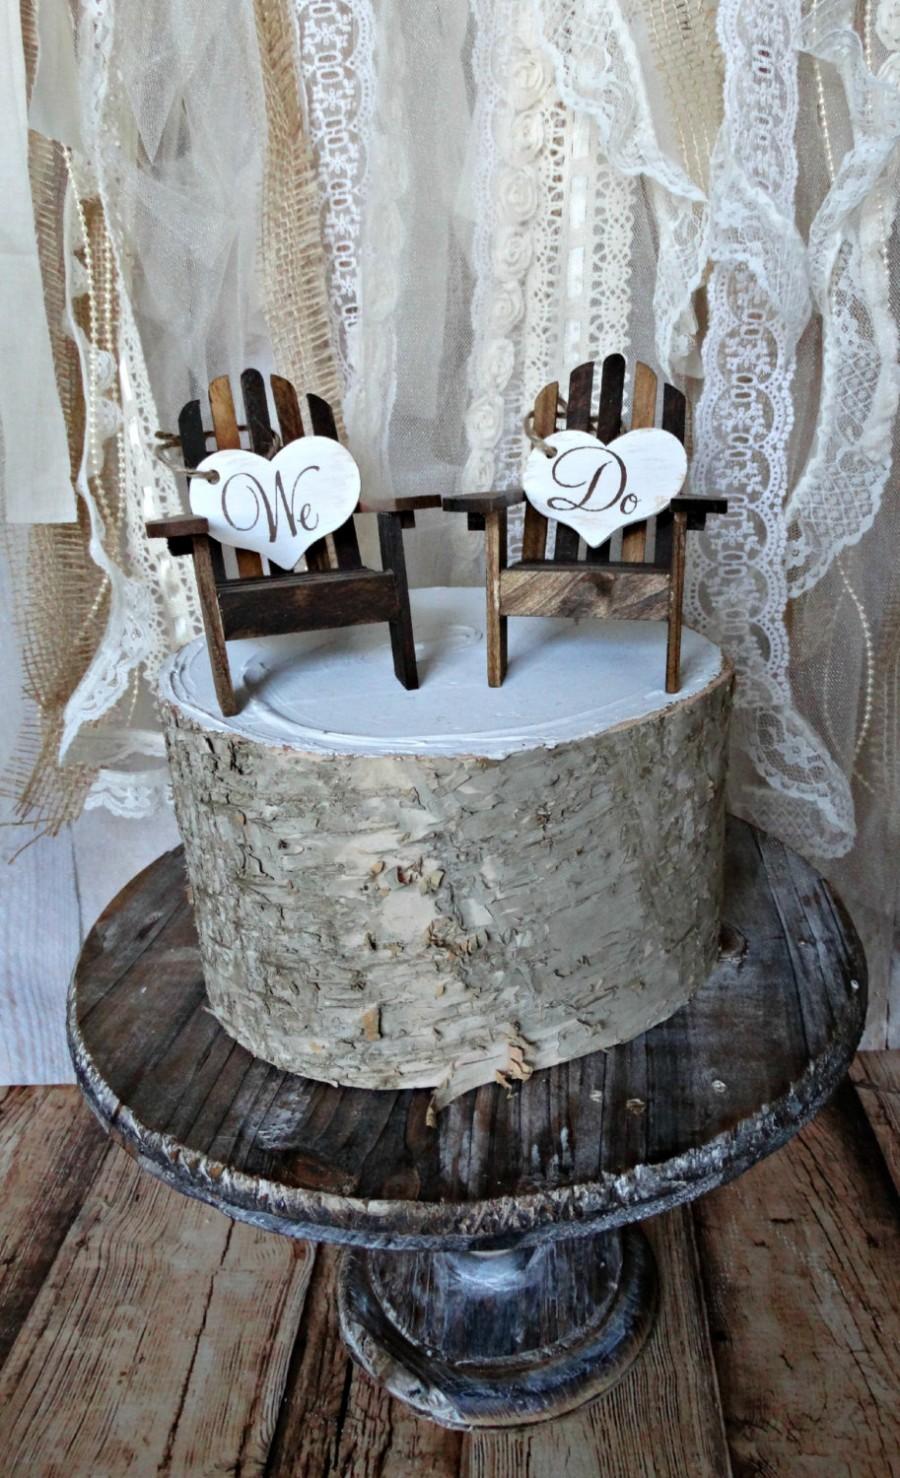 زفاف - Adirondack-chairs-nautical-wedding-cake topper-miniature-destination-wedding keepsake-beach-bride- groom-Mr.and Mrs.-lake house-rustic